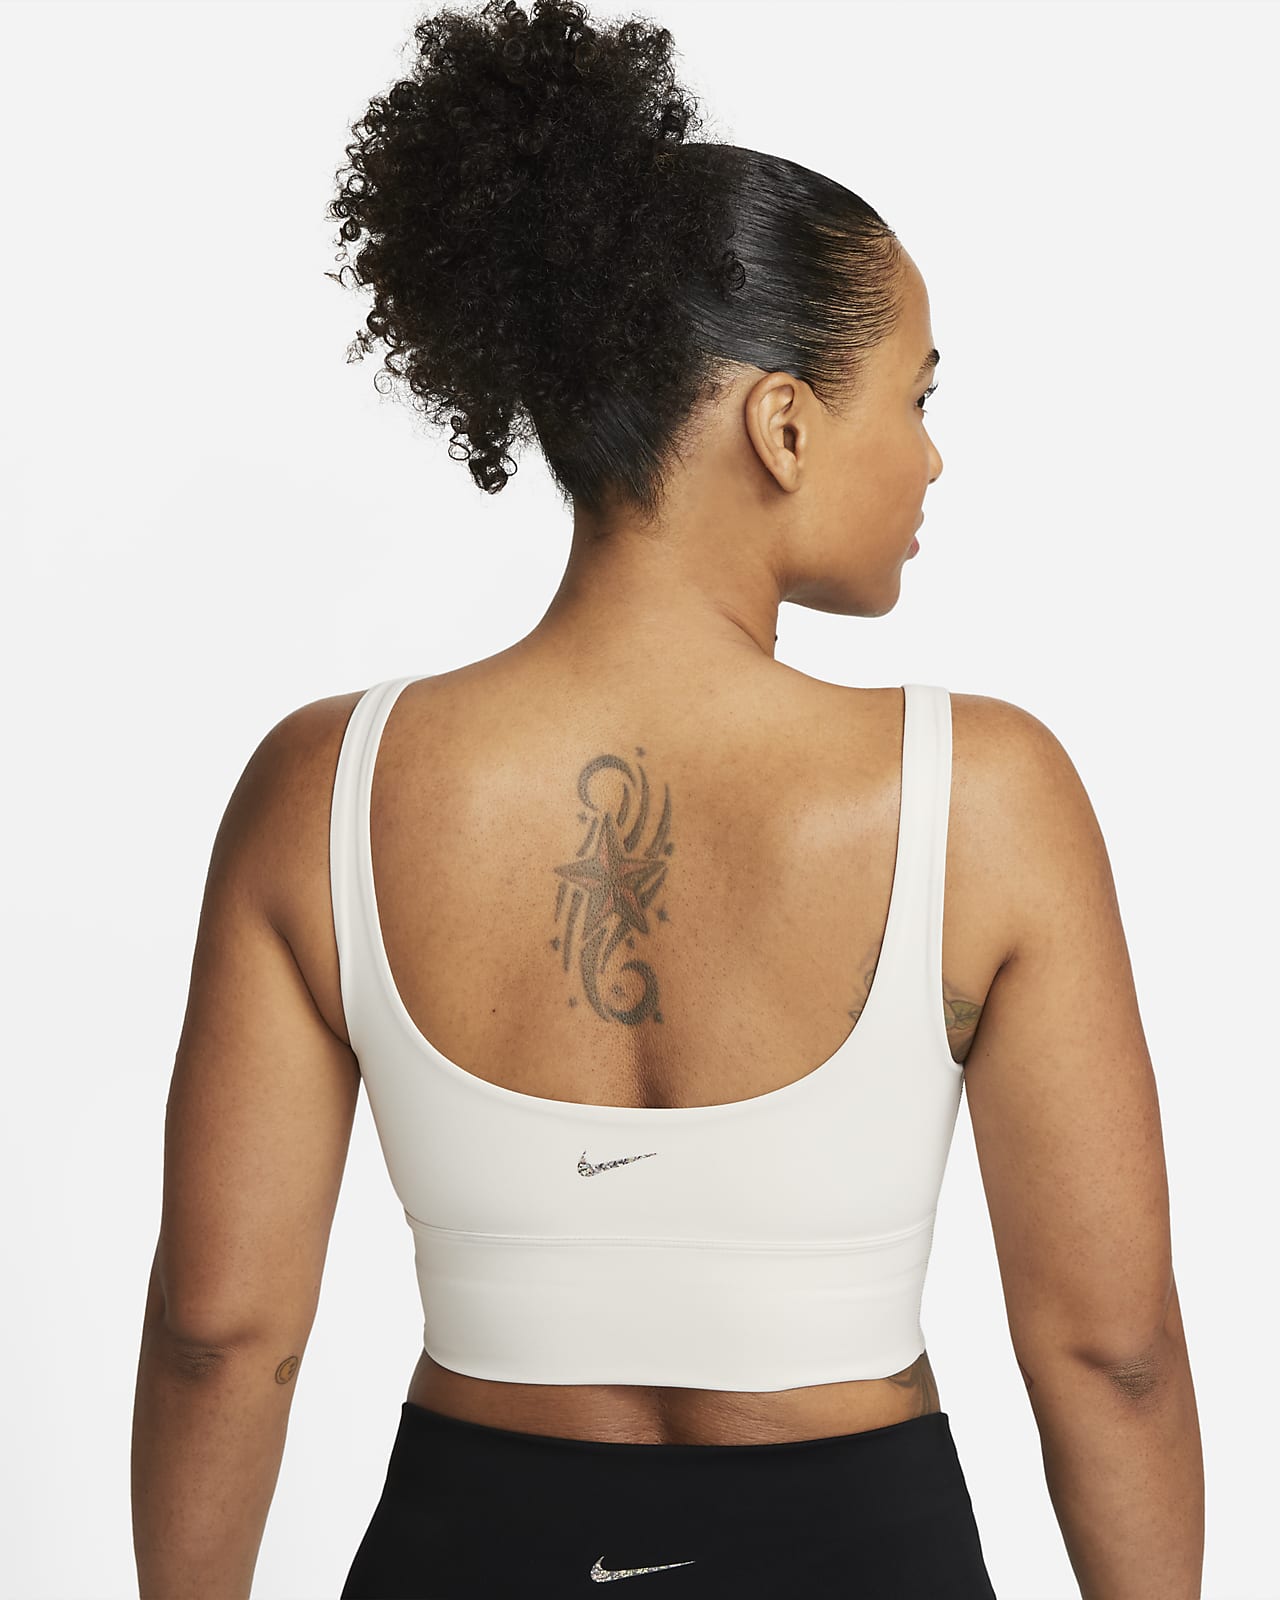 Nike Zenvy Women's Light-Support Non-Padded Longline Sports Bra